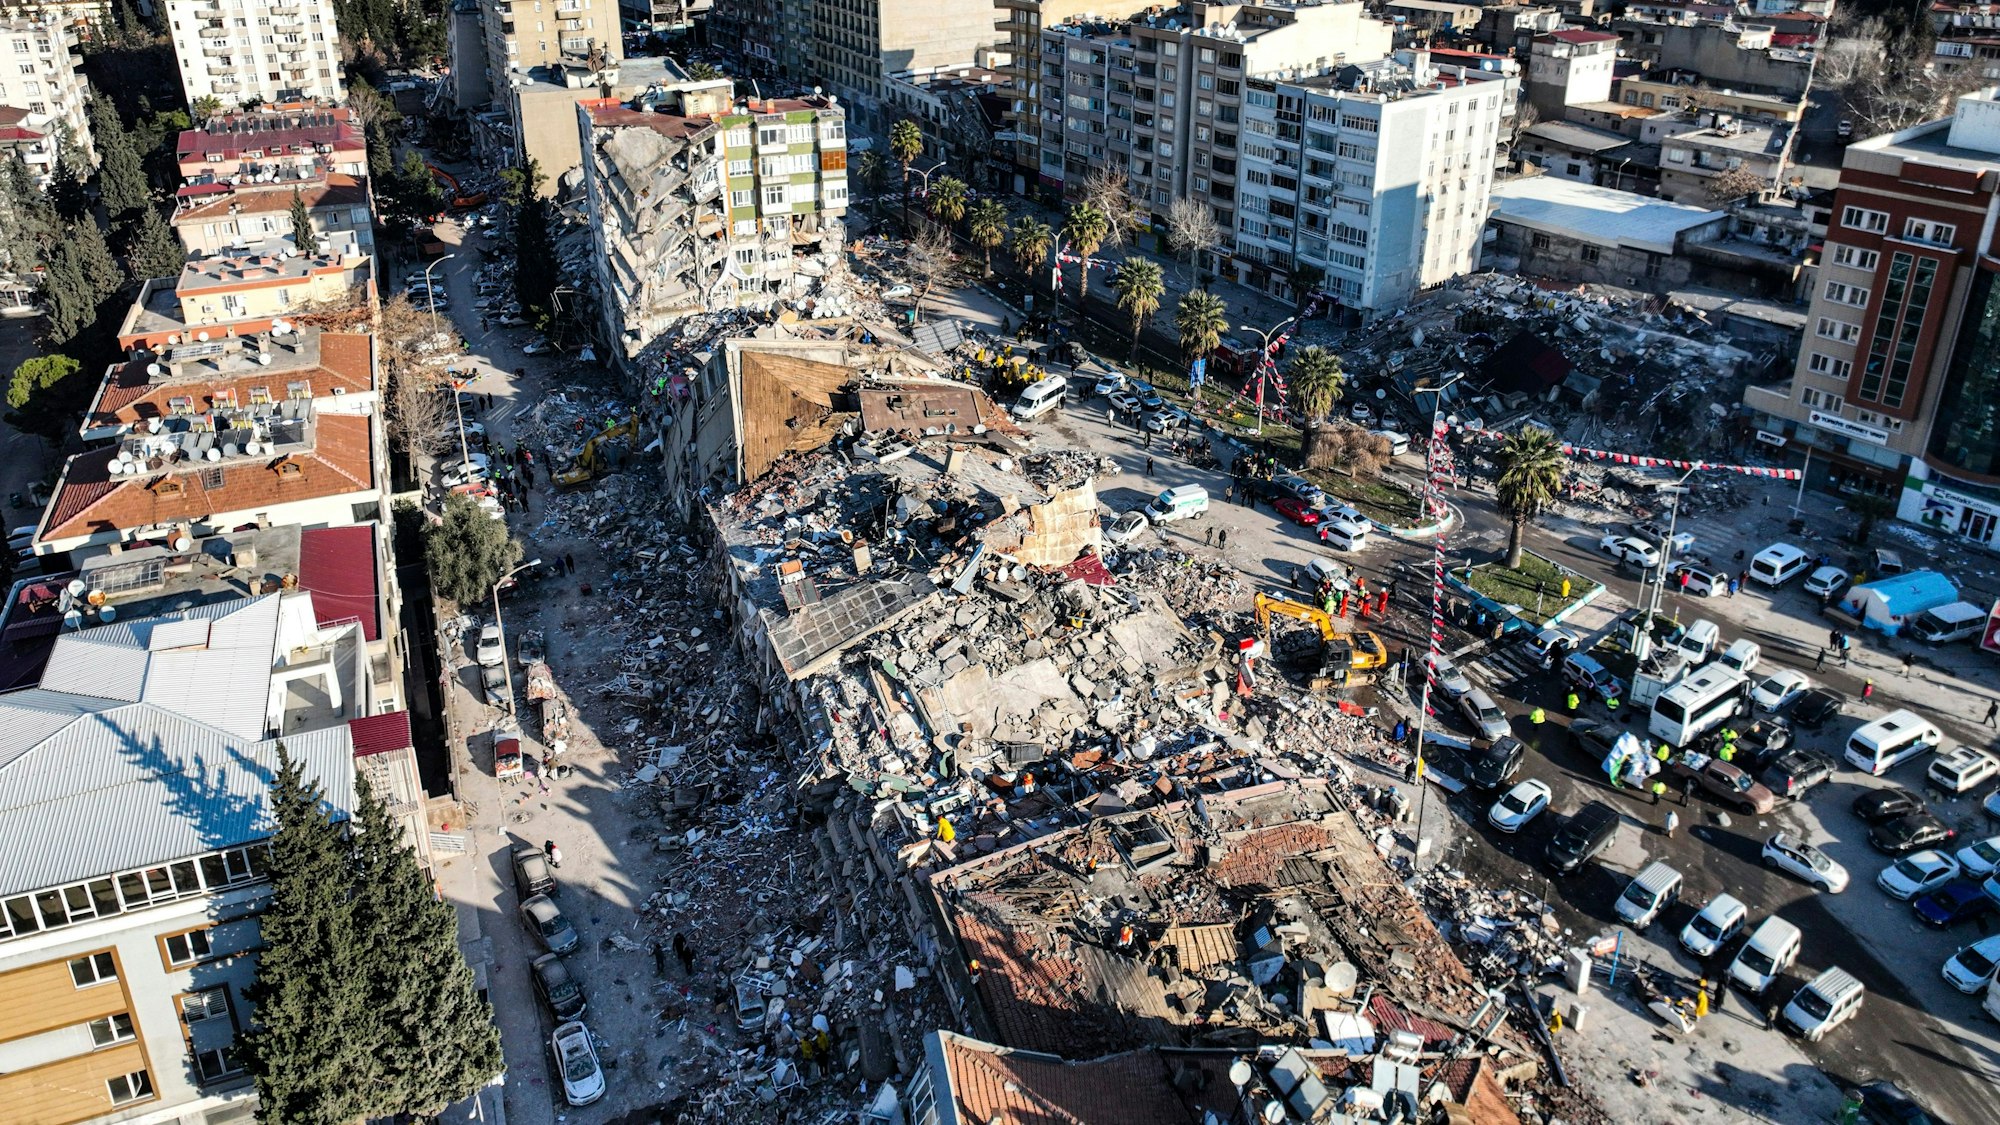 08.02.2023, Türkei, Kahramanmaras: Ein Luftbild zeigt durch die Erdbeben zerstörte Gebäude. Ständige Nachbeben und beschädigte Straßen erschweren die Bewältigung der Notlage nach den Erdbeben in der Türkei und Syrien. Foto: Ahmet Akpolat/DIA/dpa +++ dpa-Bildfunk +++